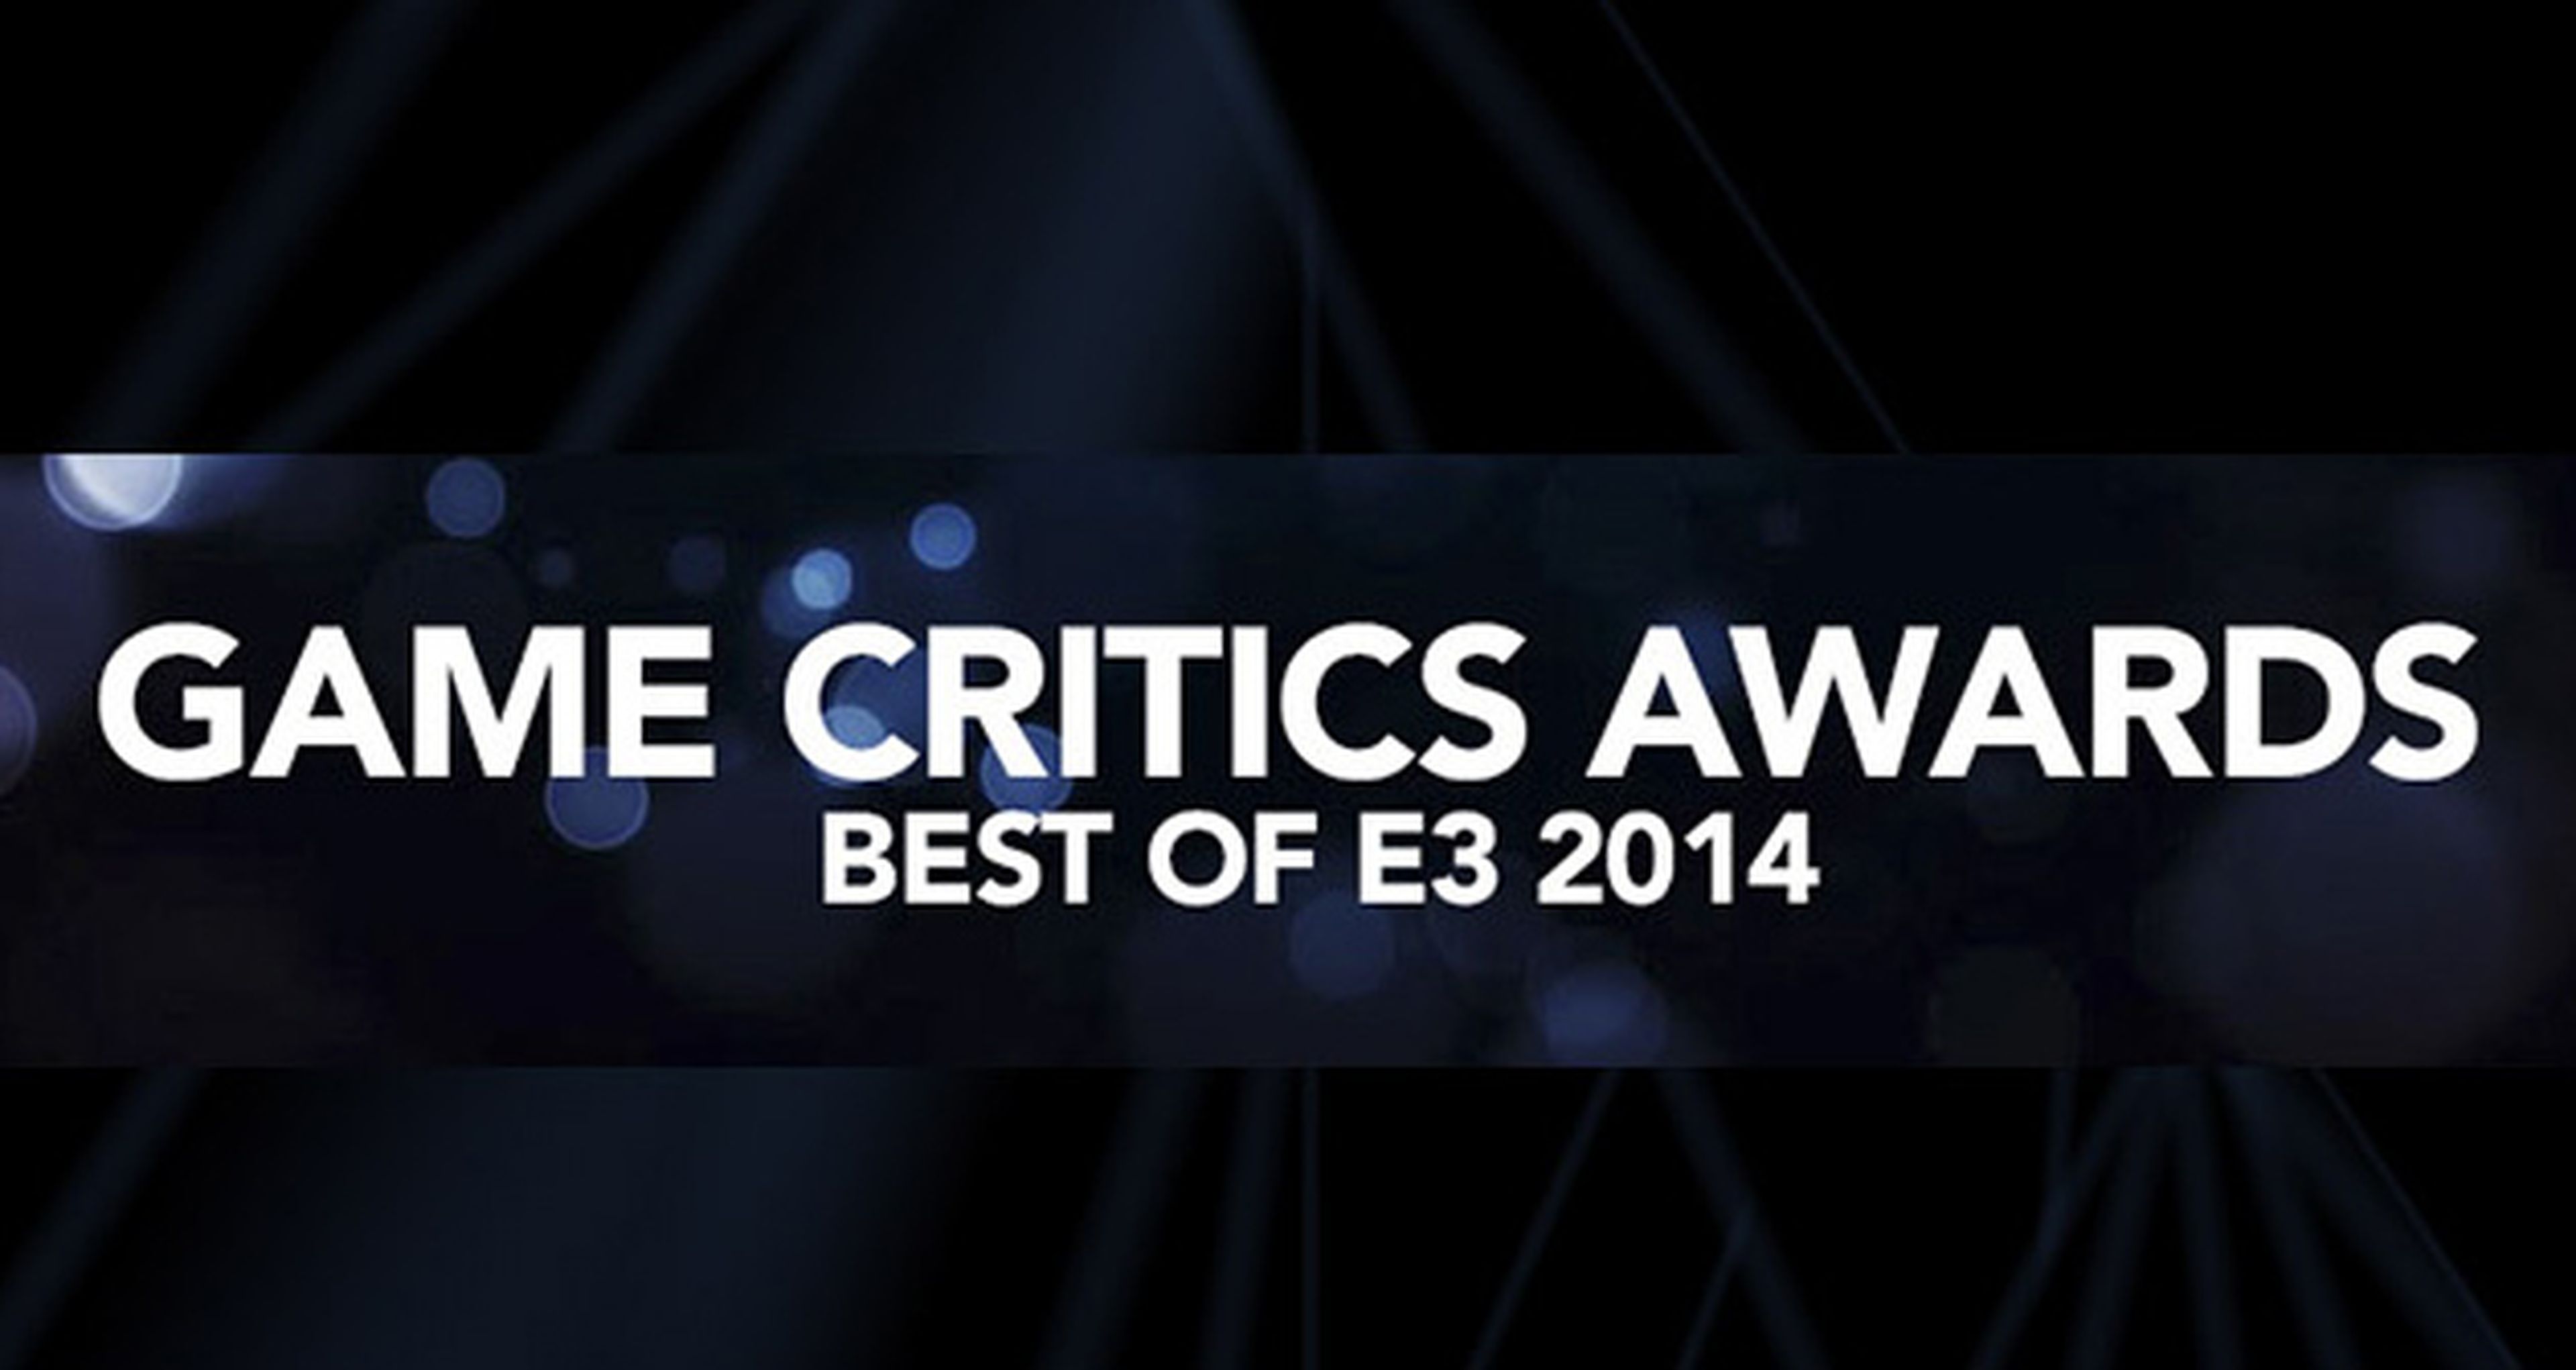 Los mejores del E3 2014 según los Game Critics Awards